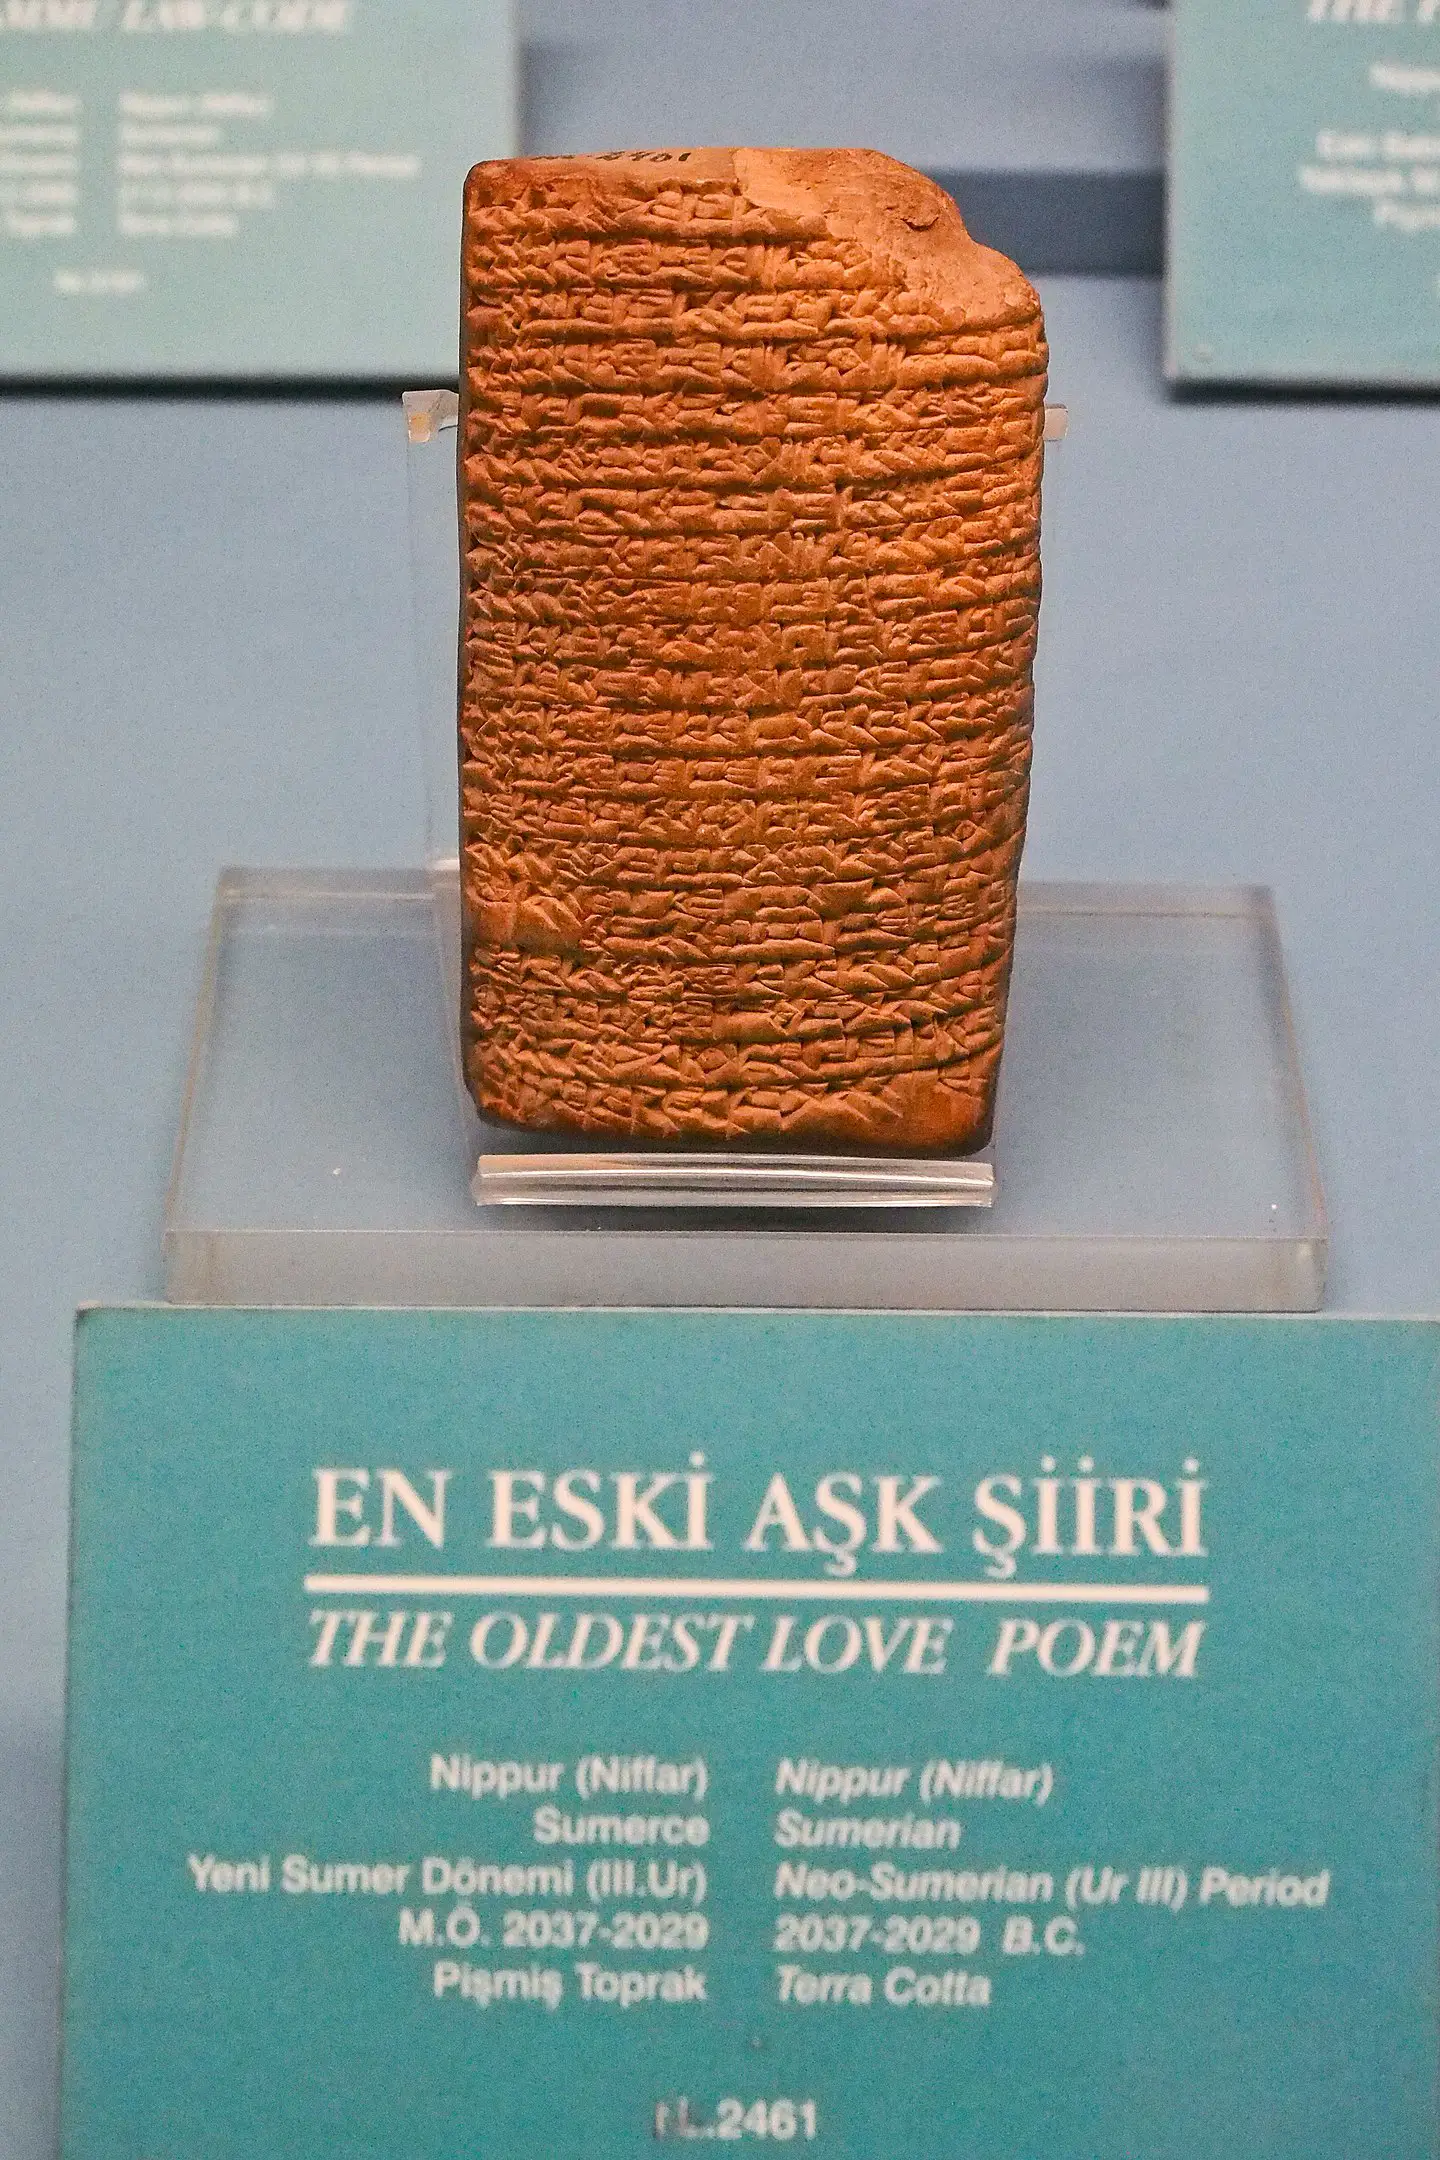 El poema de amor más antiguo de la historia, escrito hace unos 4.000 años: a quién iba dirigido y qué mensaje esconde